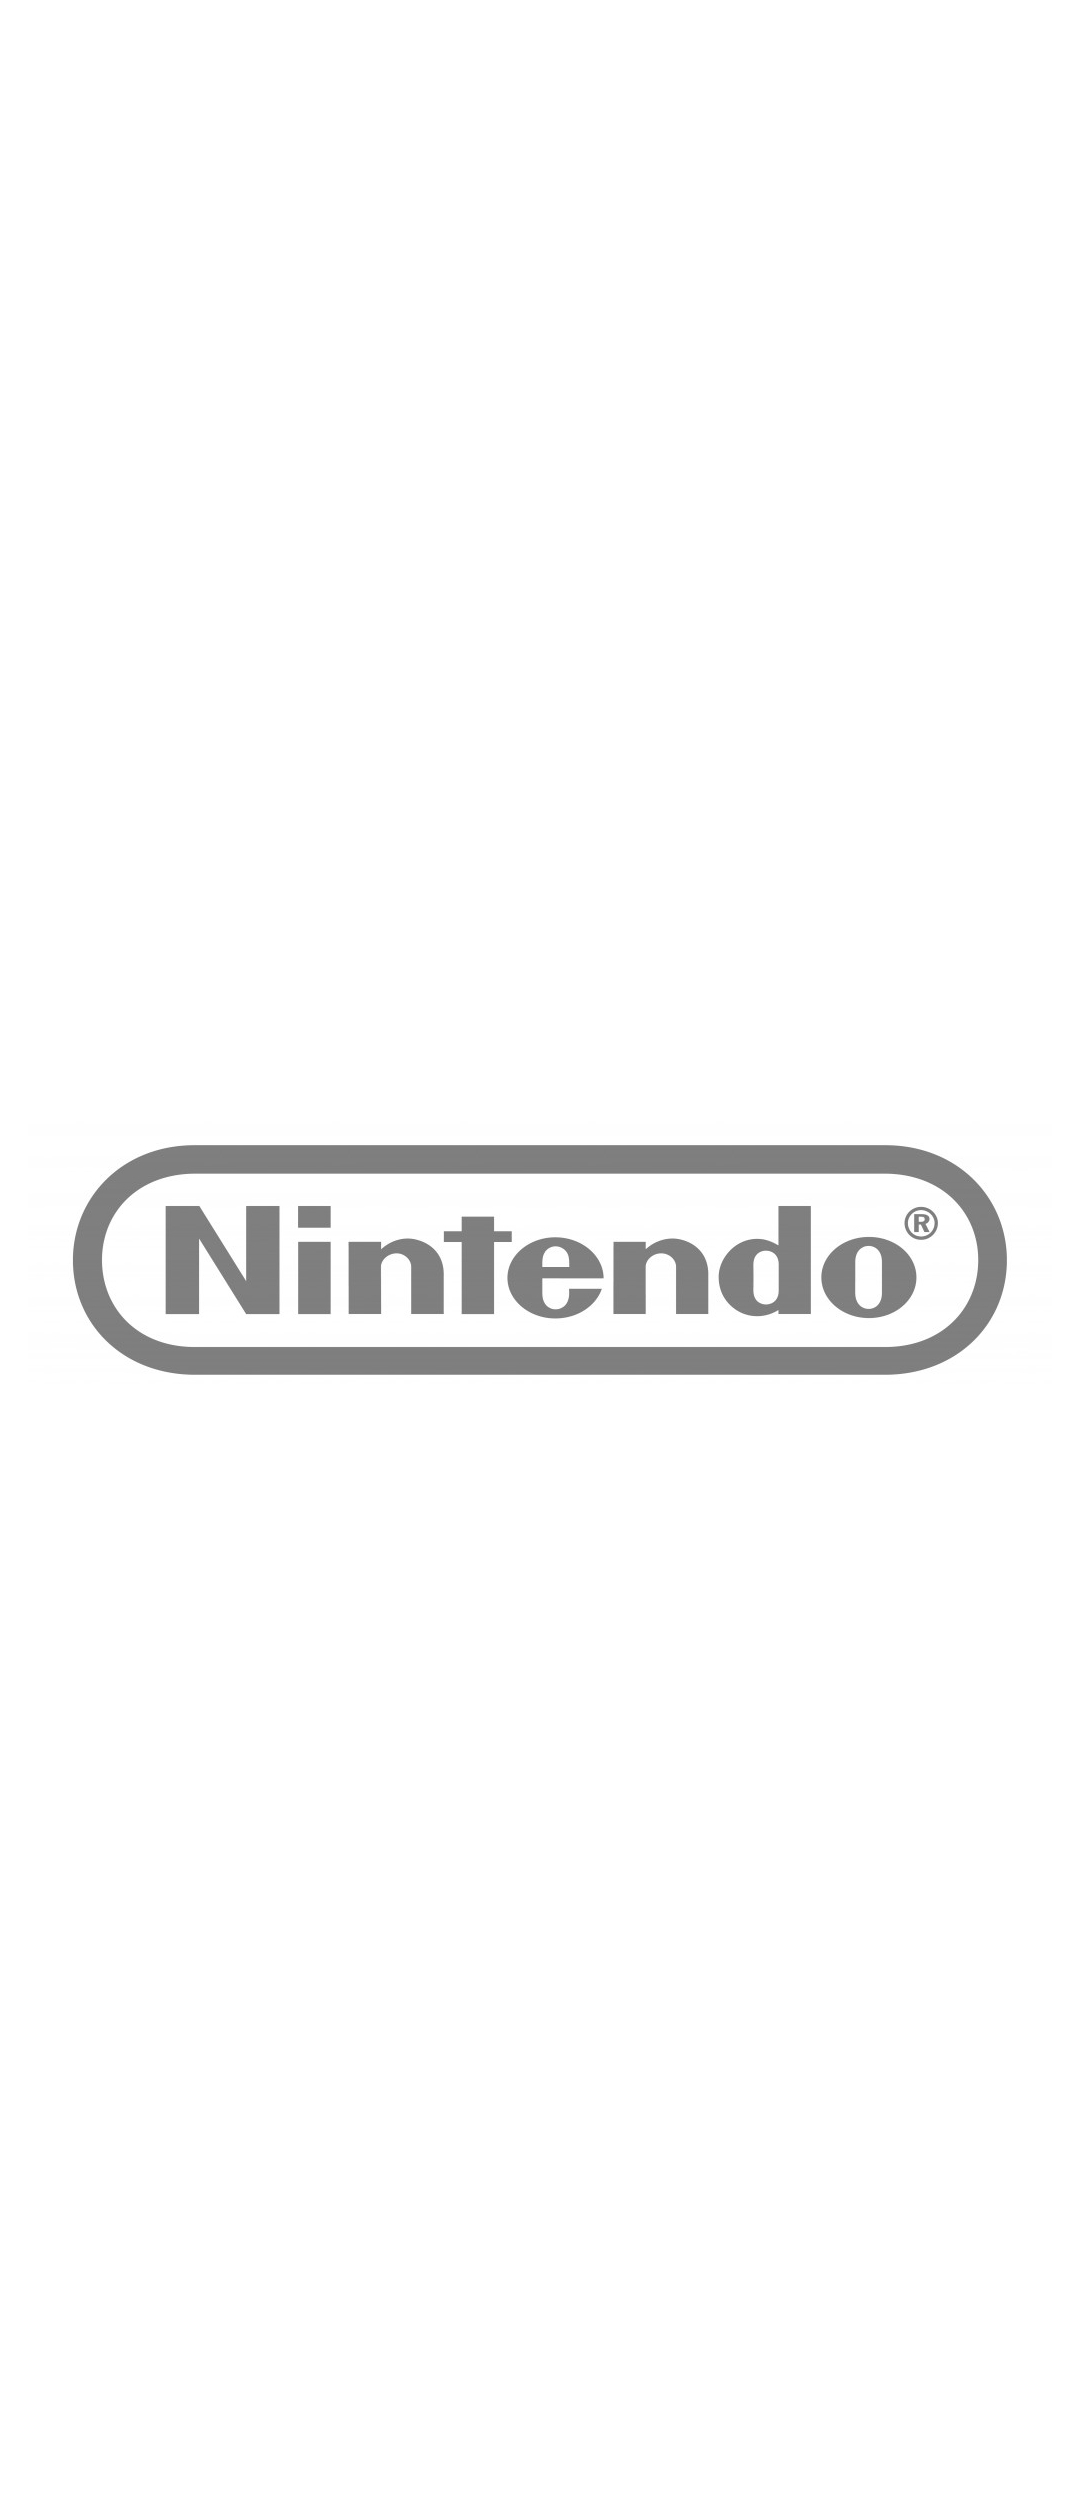 任天堂 Nintendo Xperia 5 壁紙 待ち受け Sumaran